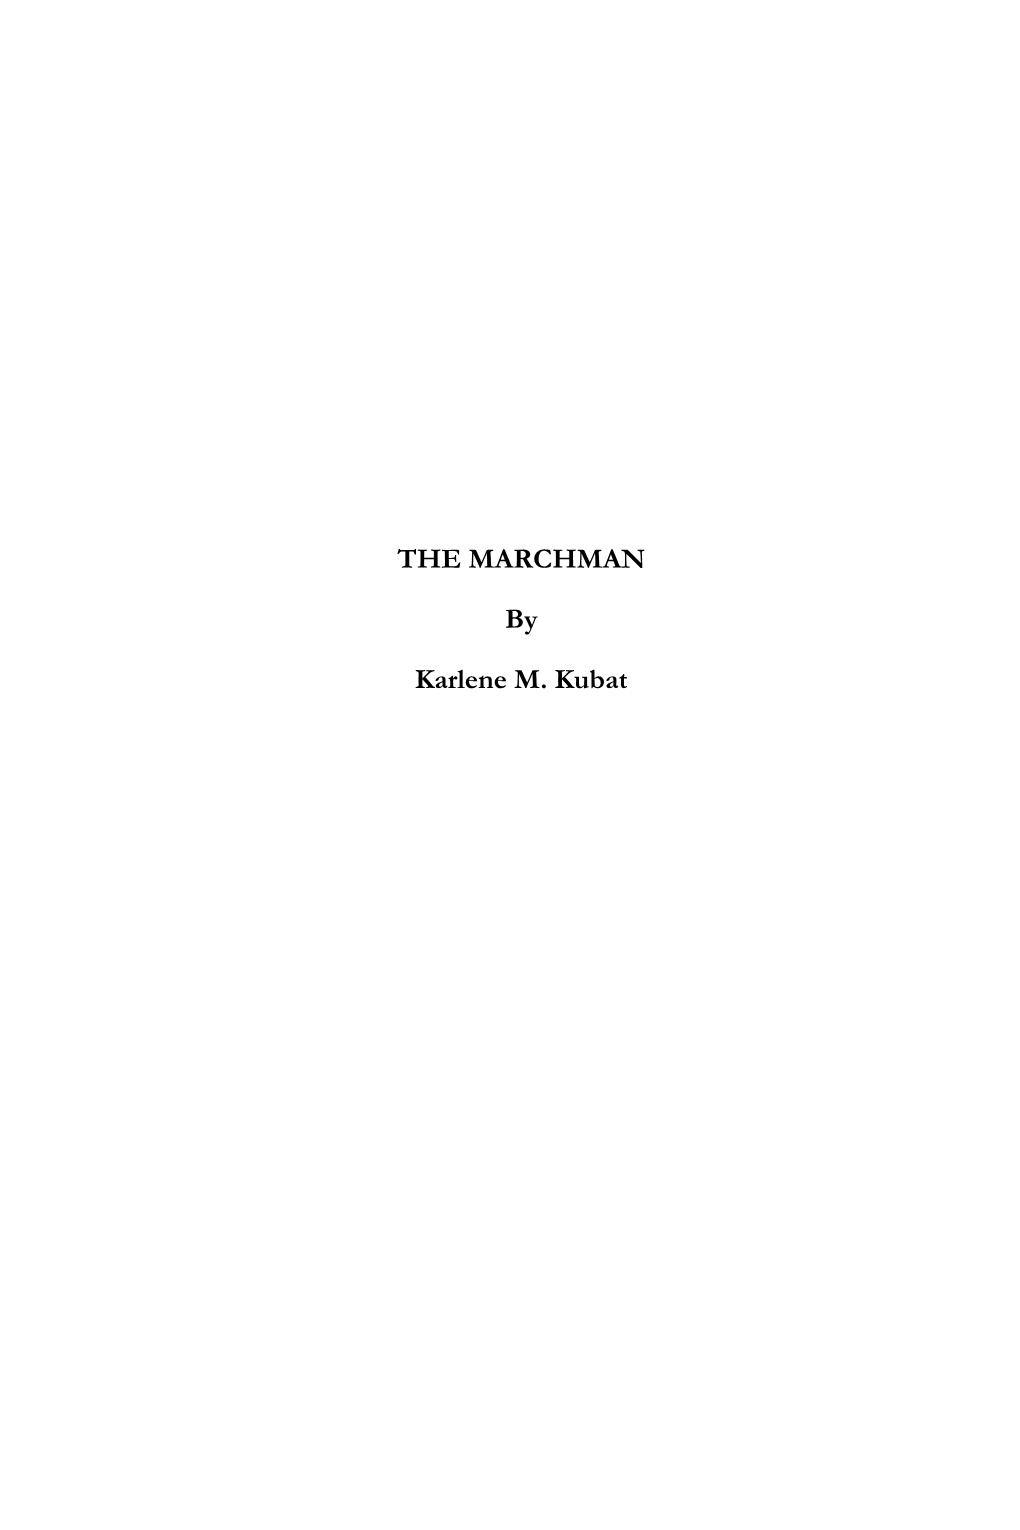 THE MARCHMAN by Karlene M. Kubat